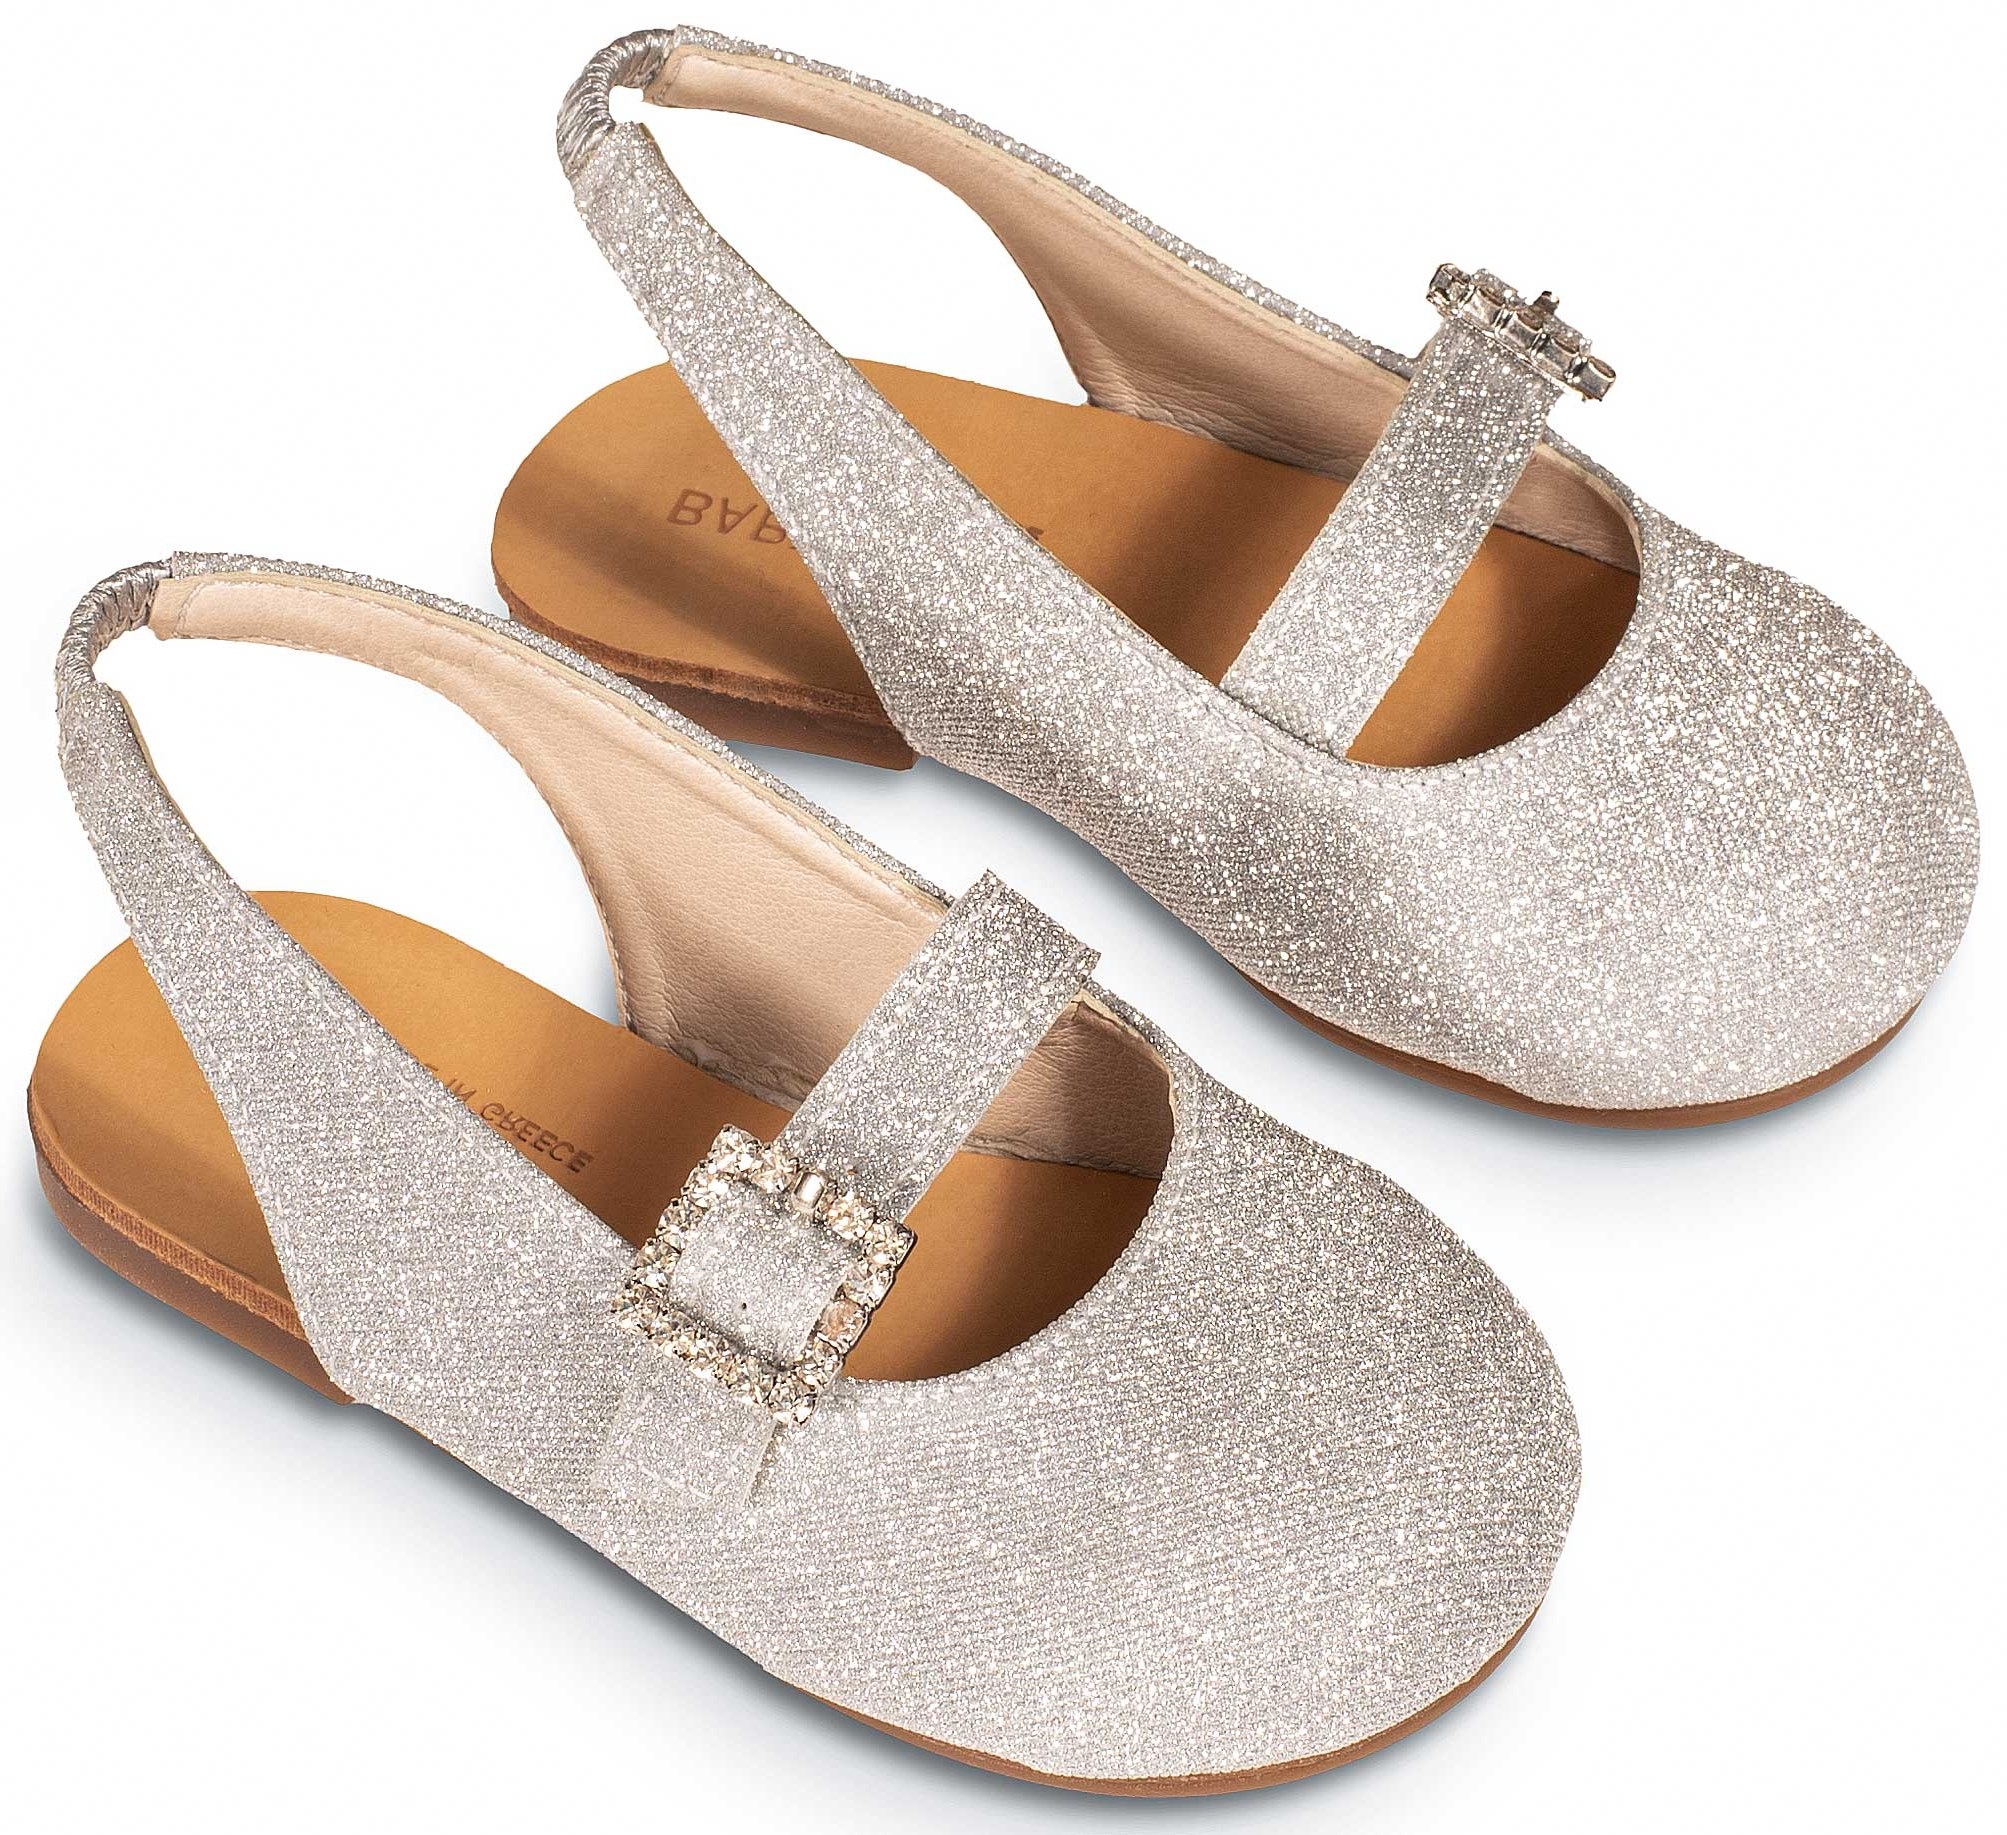 Γαλλικό γοβάκι ασημί - Βαπτιστικά παπούτσια για κορίτσι